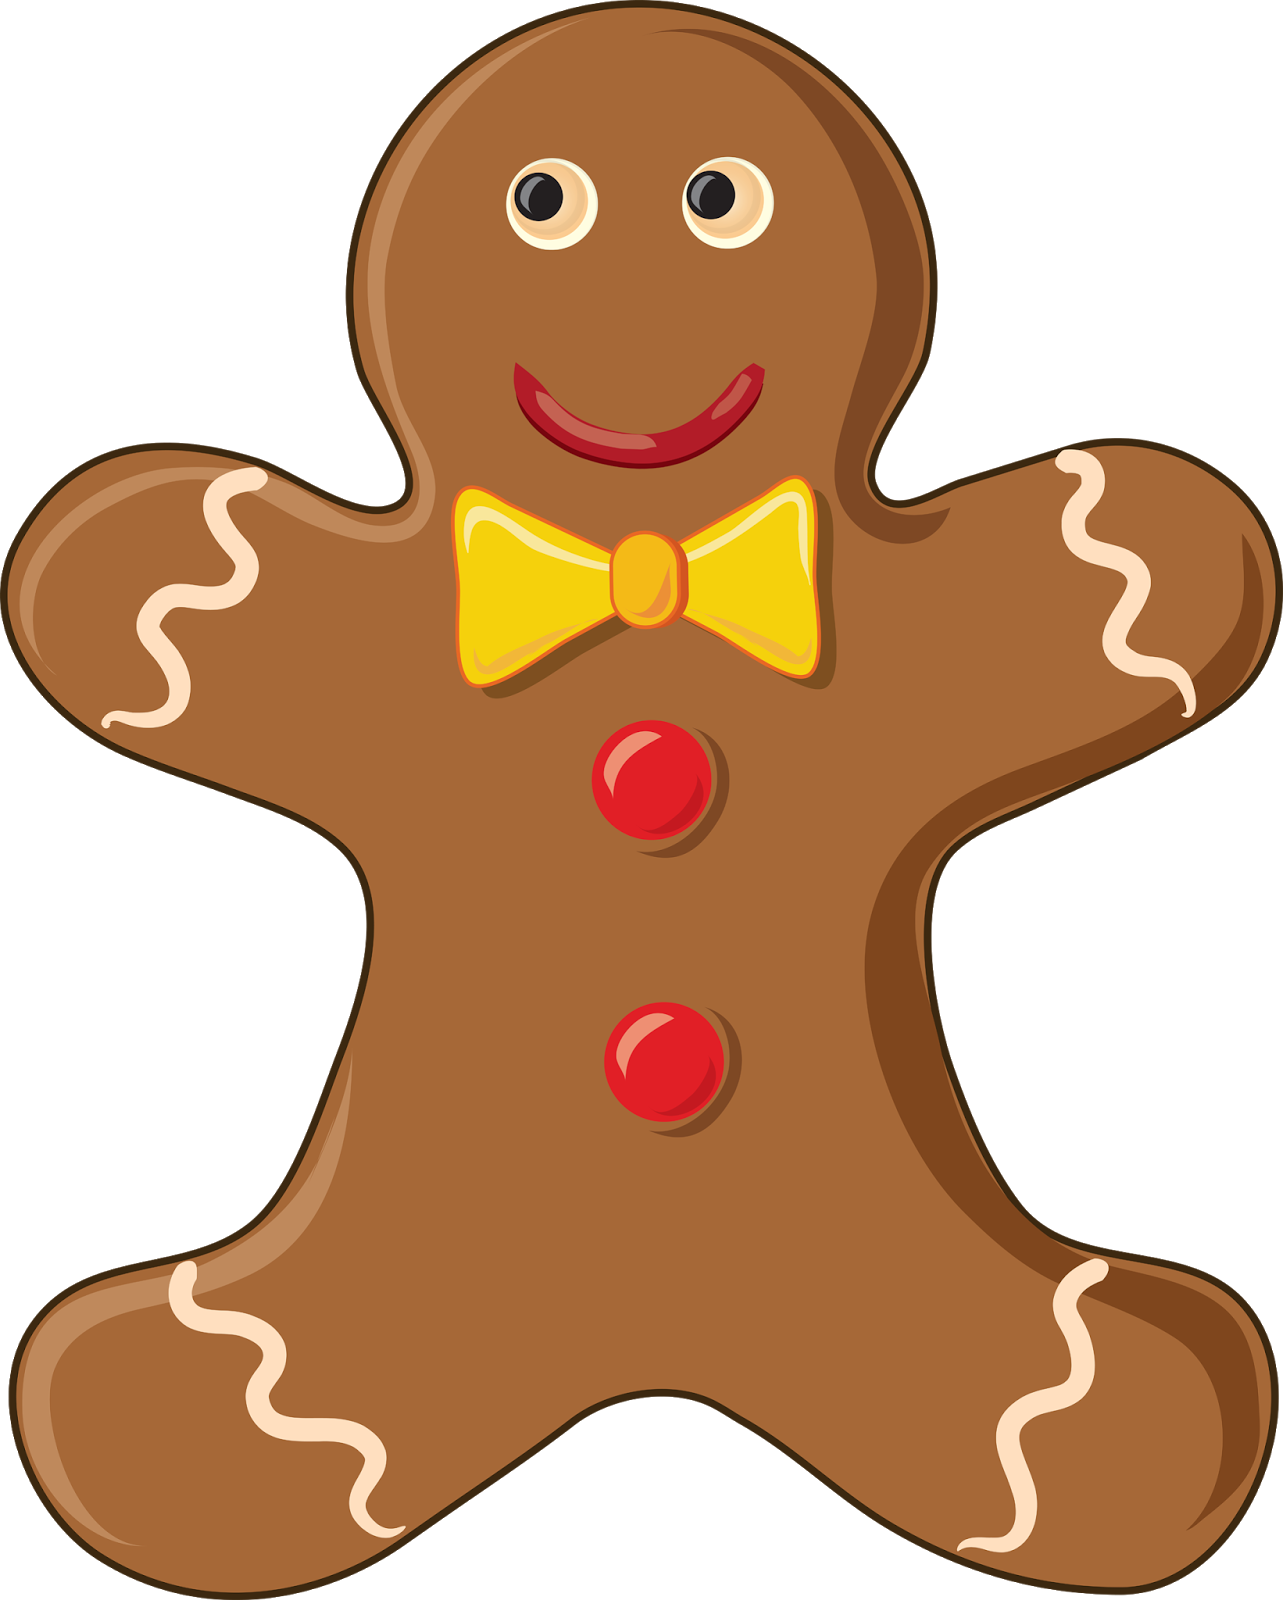 The Gingerbread Man Es Tan Popular Que Incluso Los Alphablocks Tienen